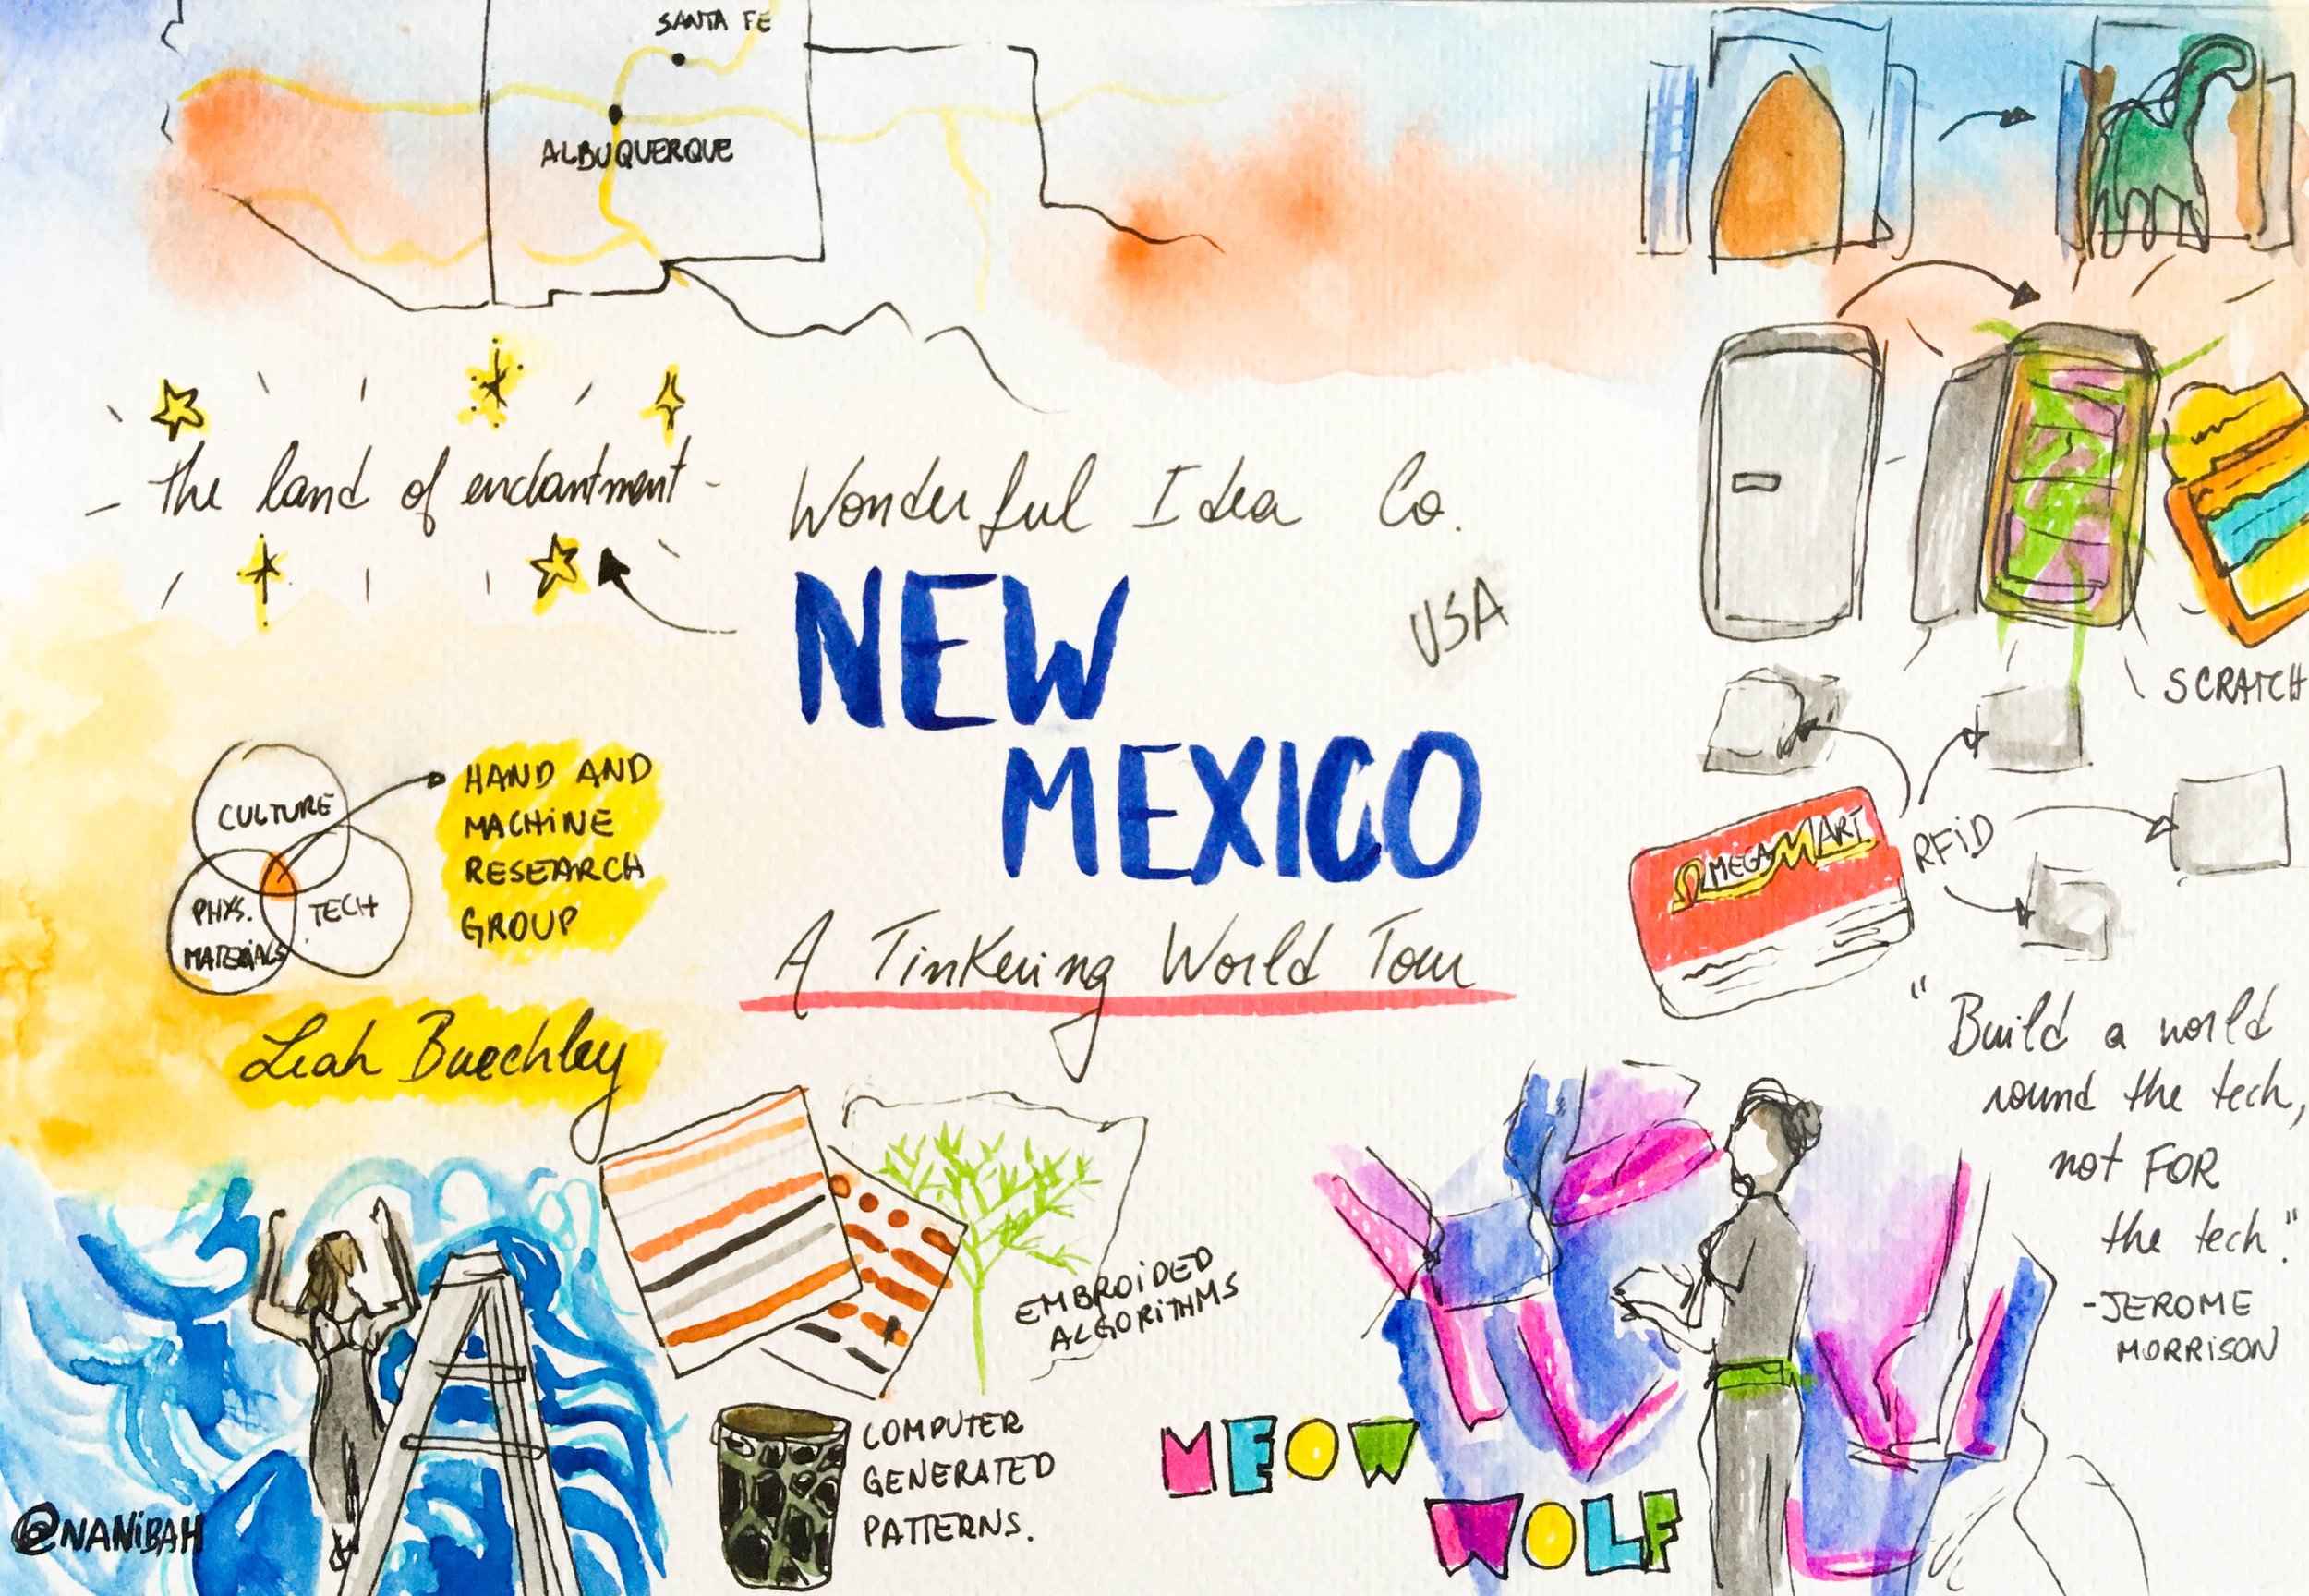 NewMexico_Tinkering_Tour.jpg